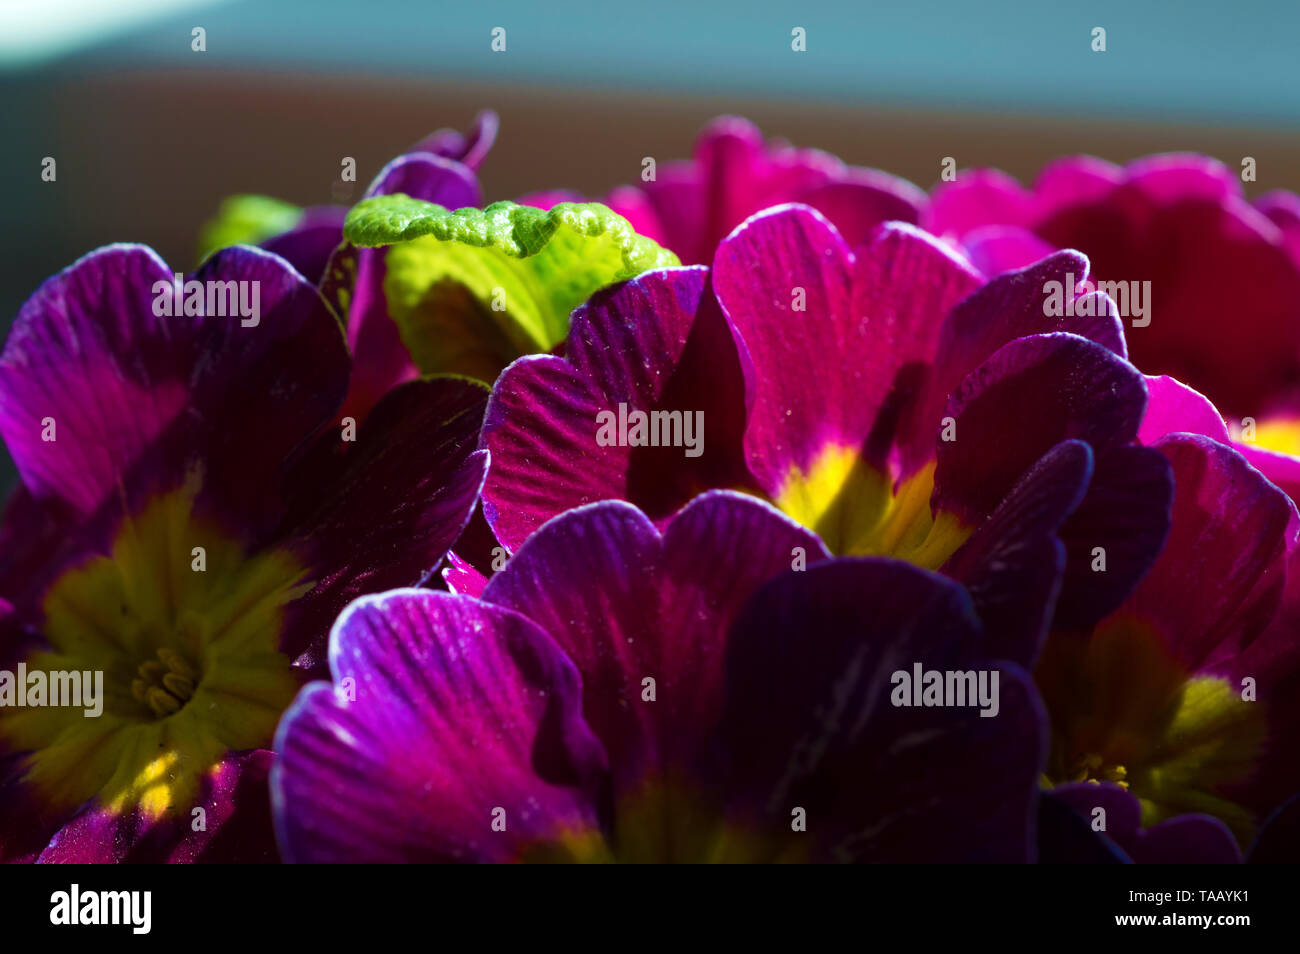 Eine bunte Bilder von rosa und gelbe Primeln mit einem Makro Objektiv aufgenommen Stockfoto